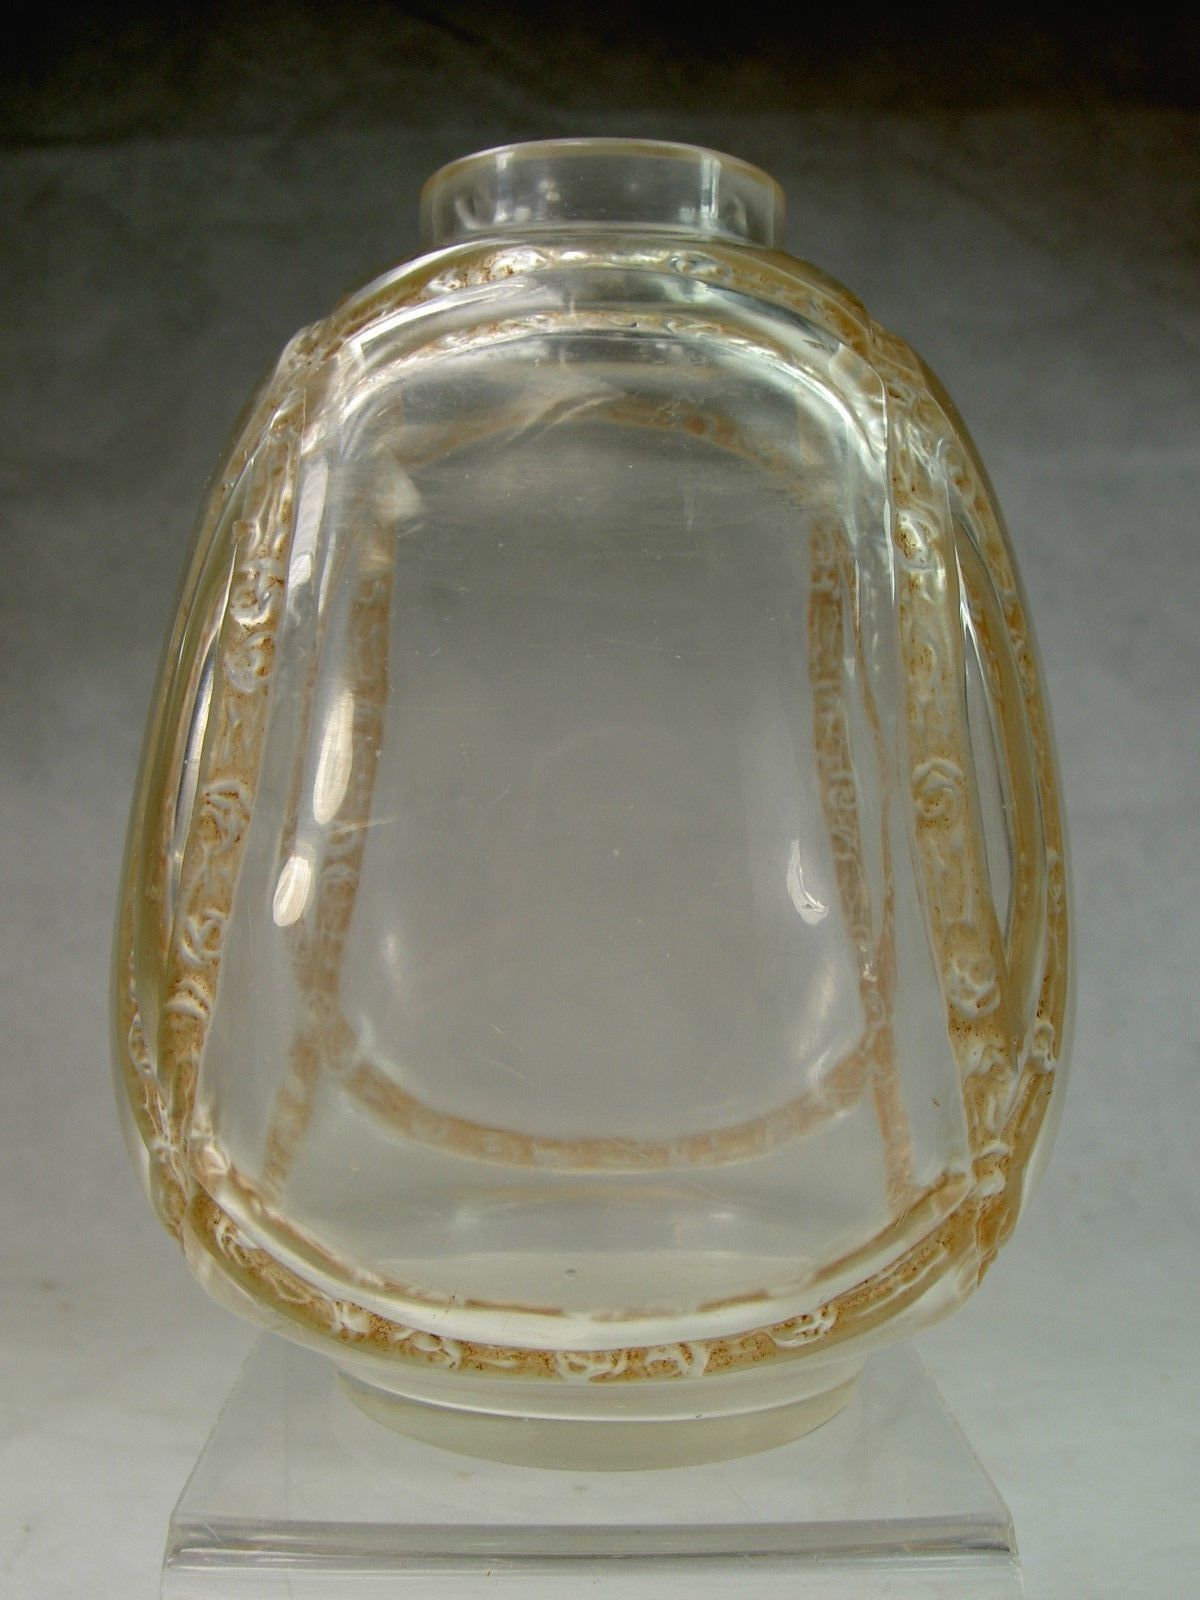 ルネラリックのパチネ技法を使って制作された花瓶